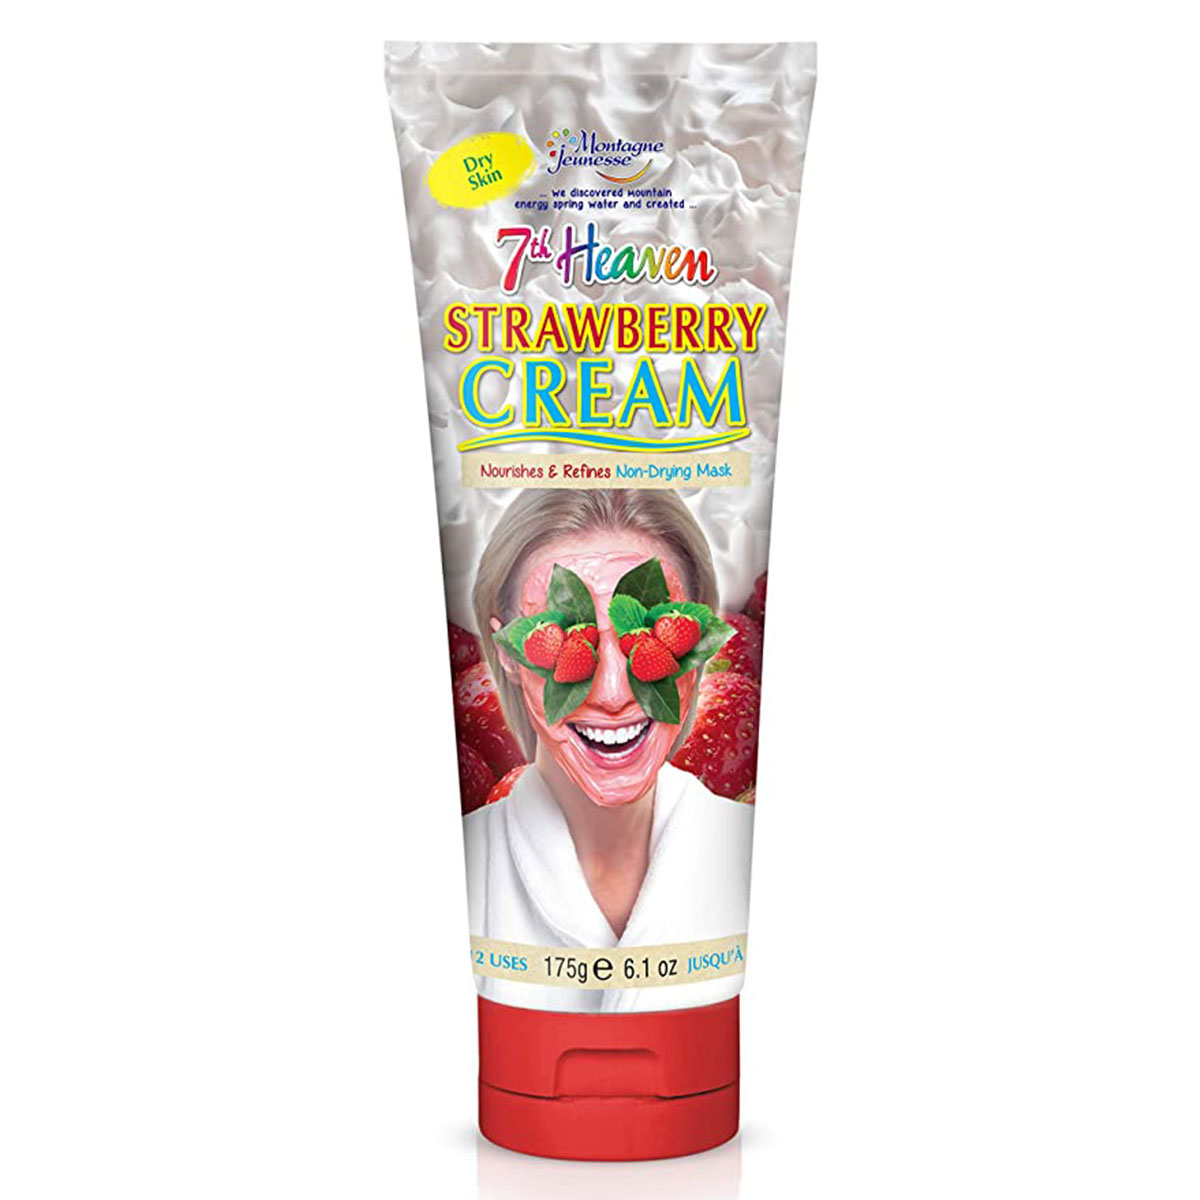 ماسک کرمی توت فرنگی~Strawberry Cream Mask~7 HEAVEN